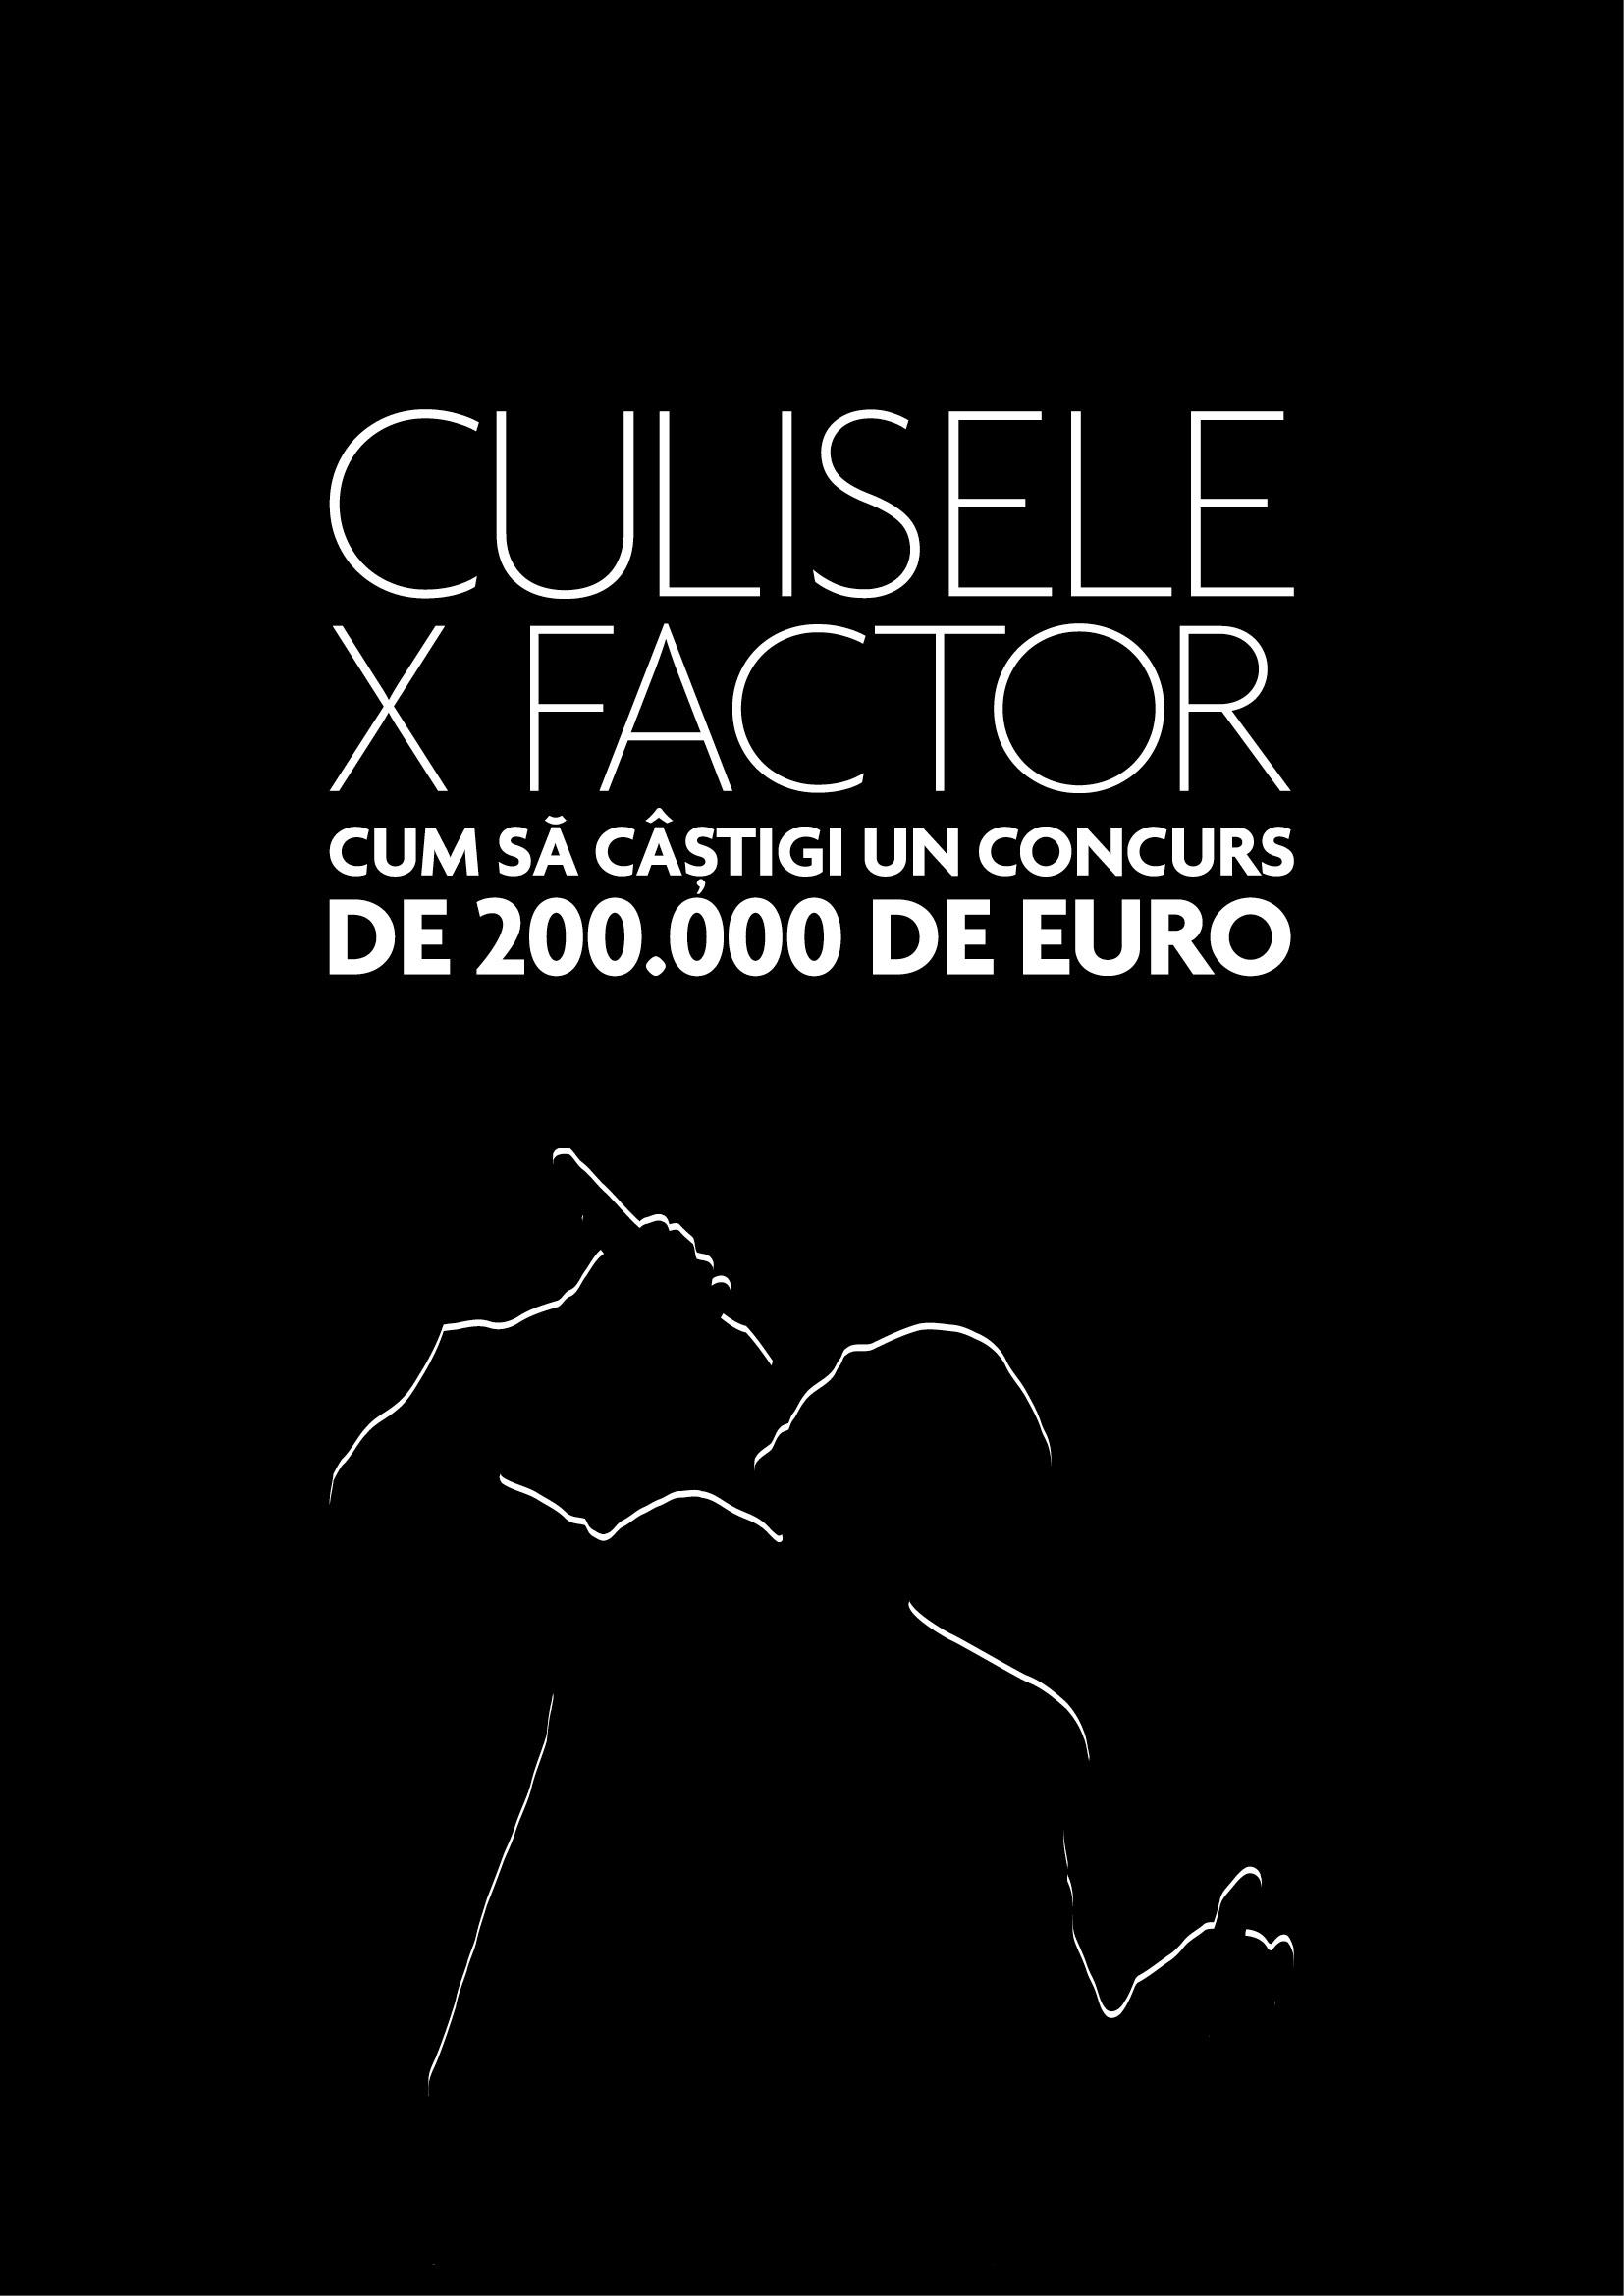 Momente din culise, interviuri si materiale in premiera de la X Factor Romania, acum intr-o carte!